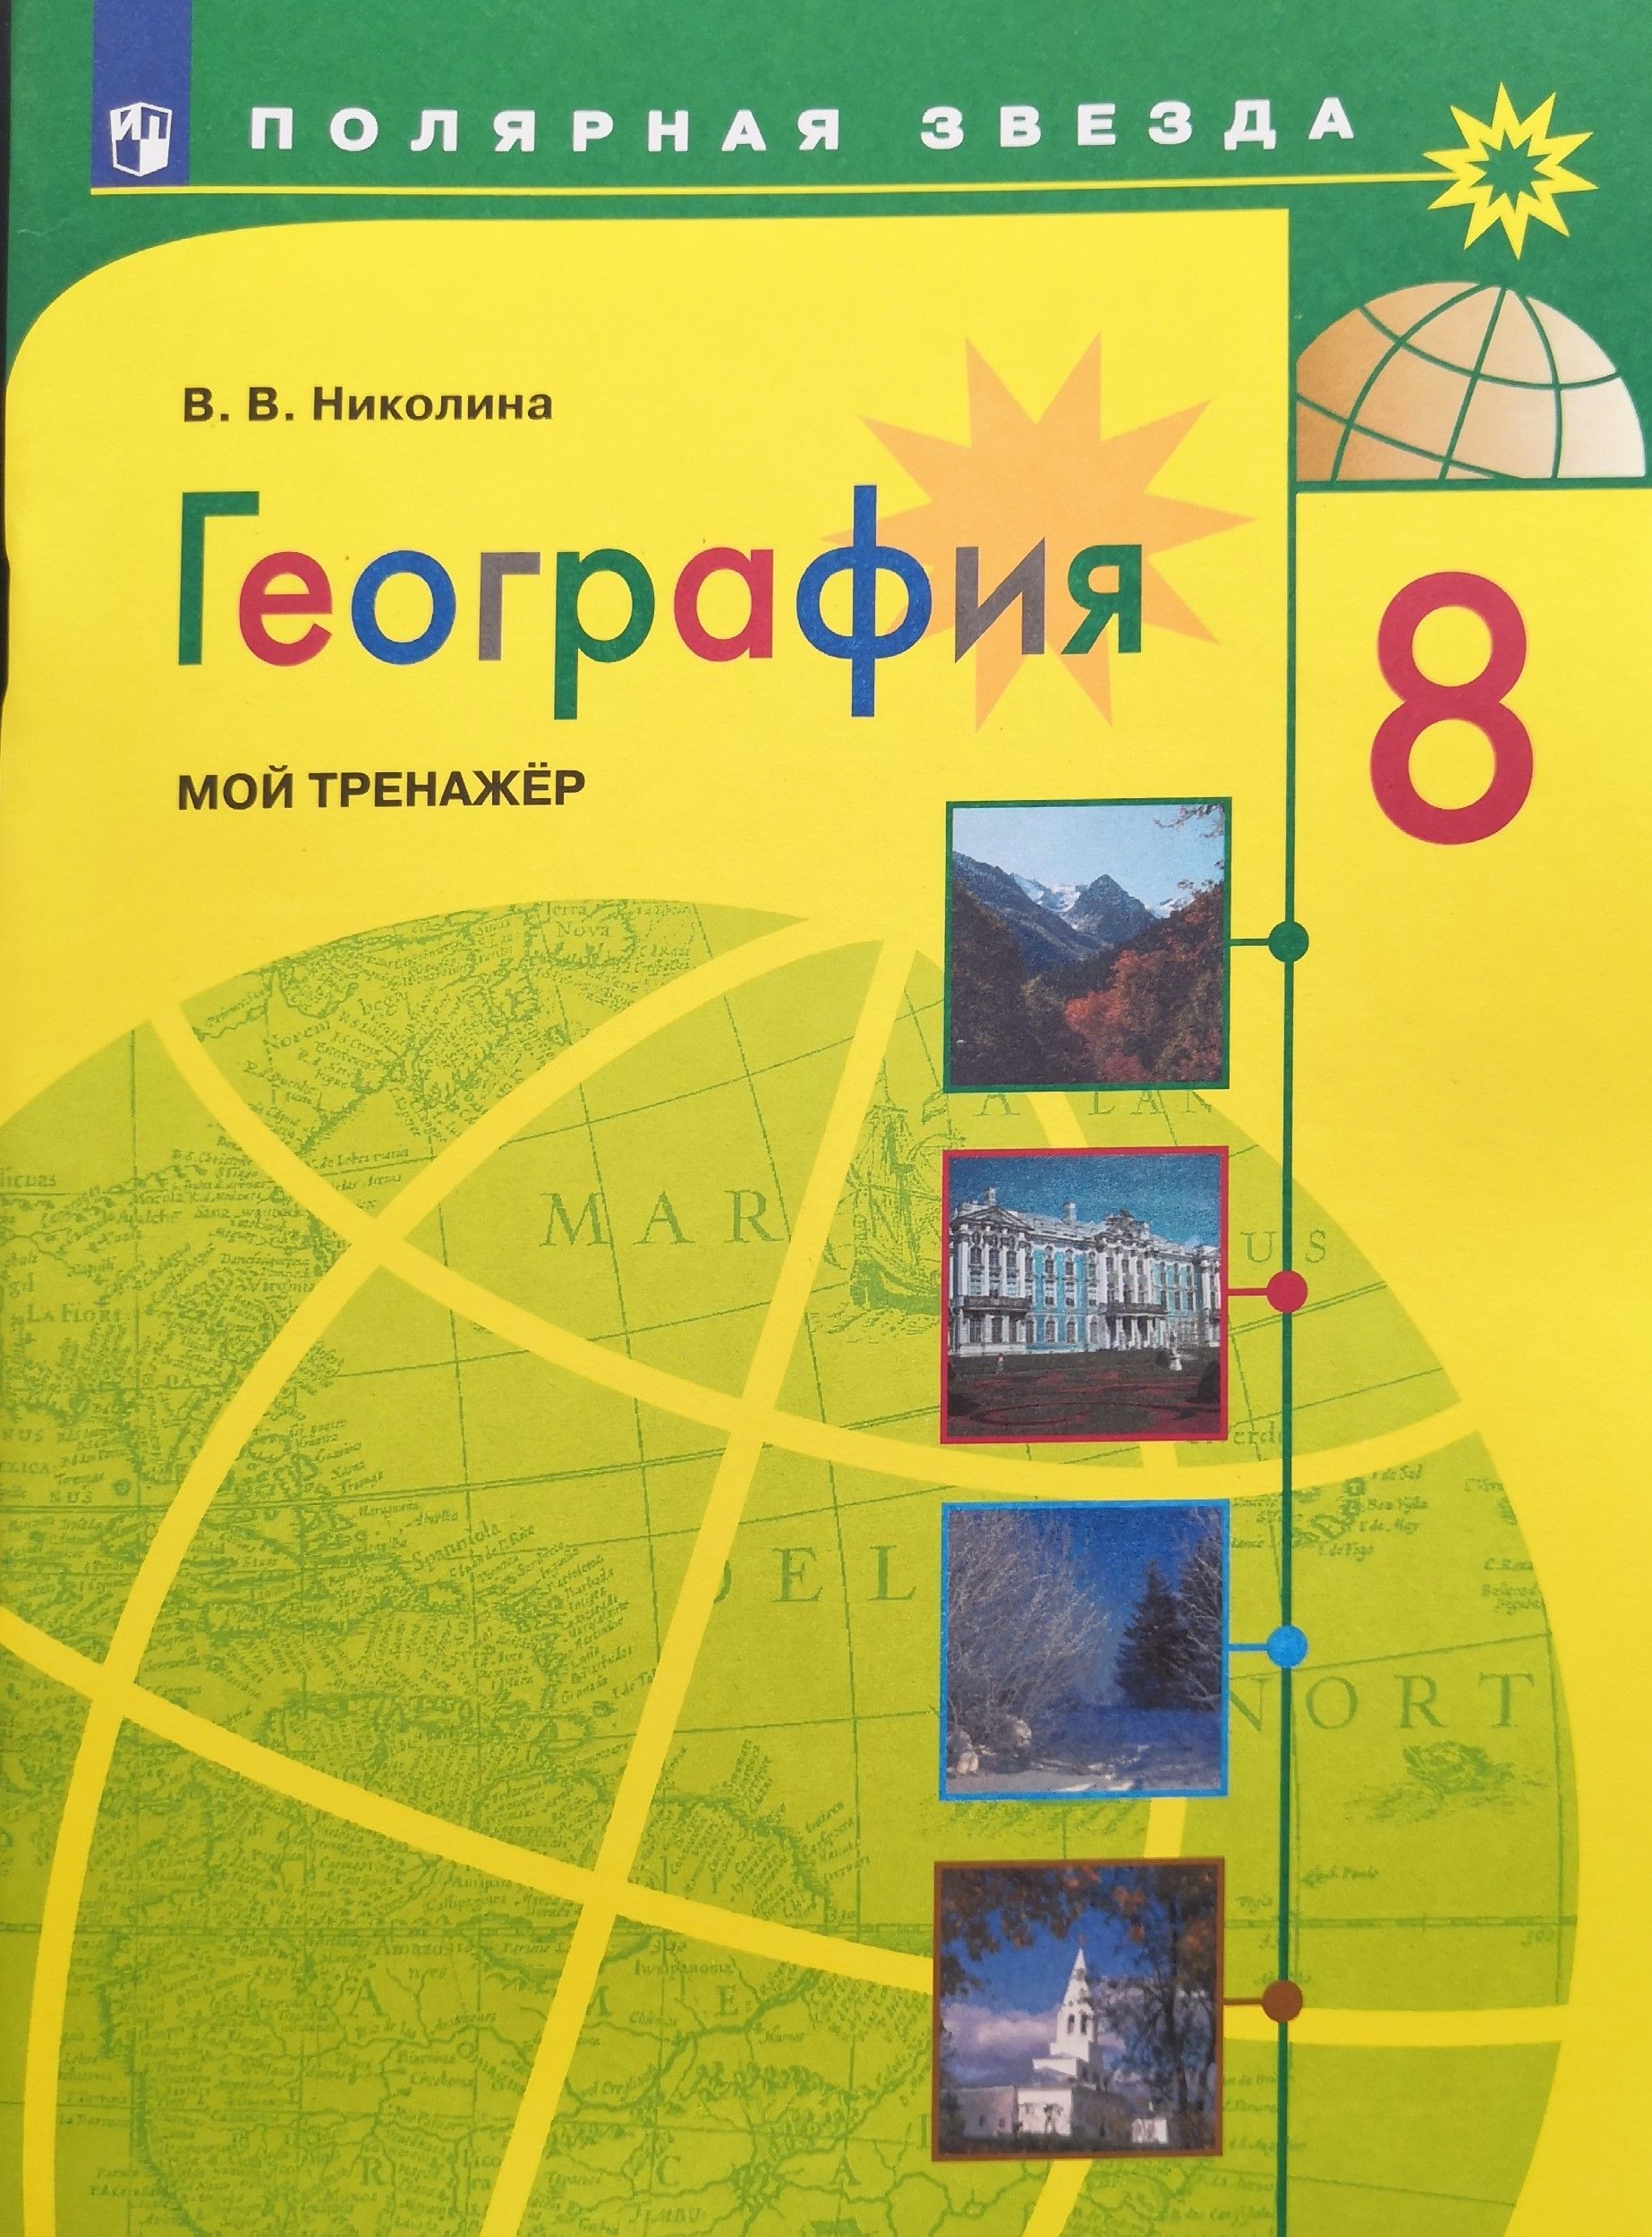 Учебник географии 7 класс липкина